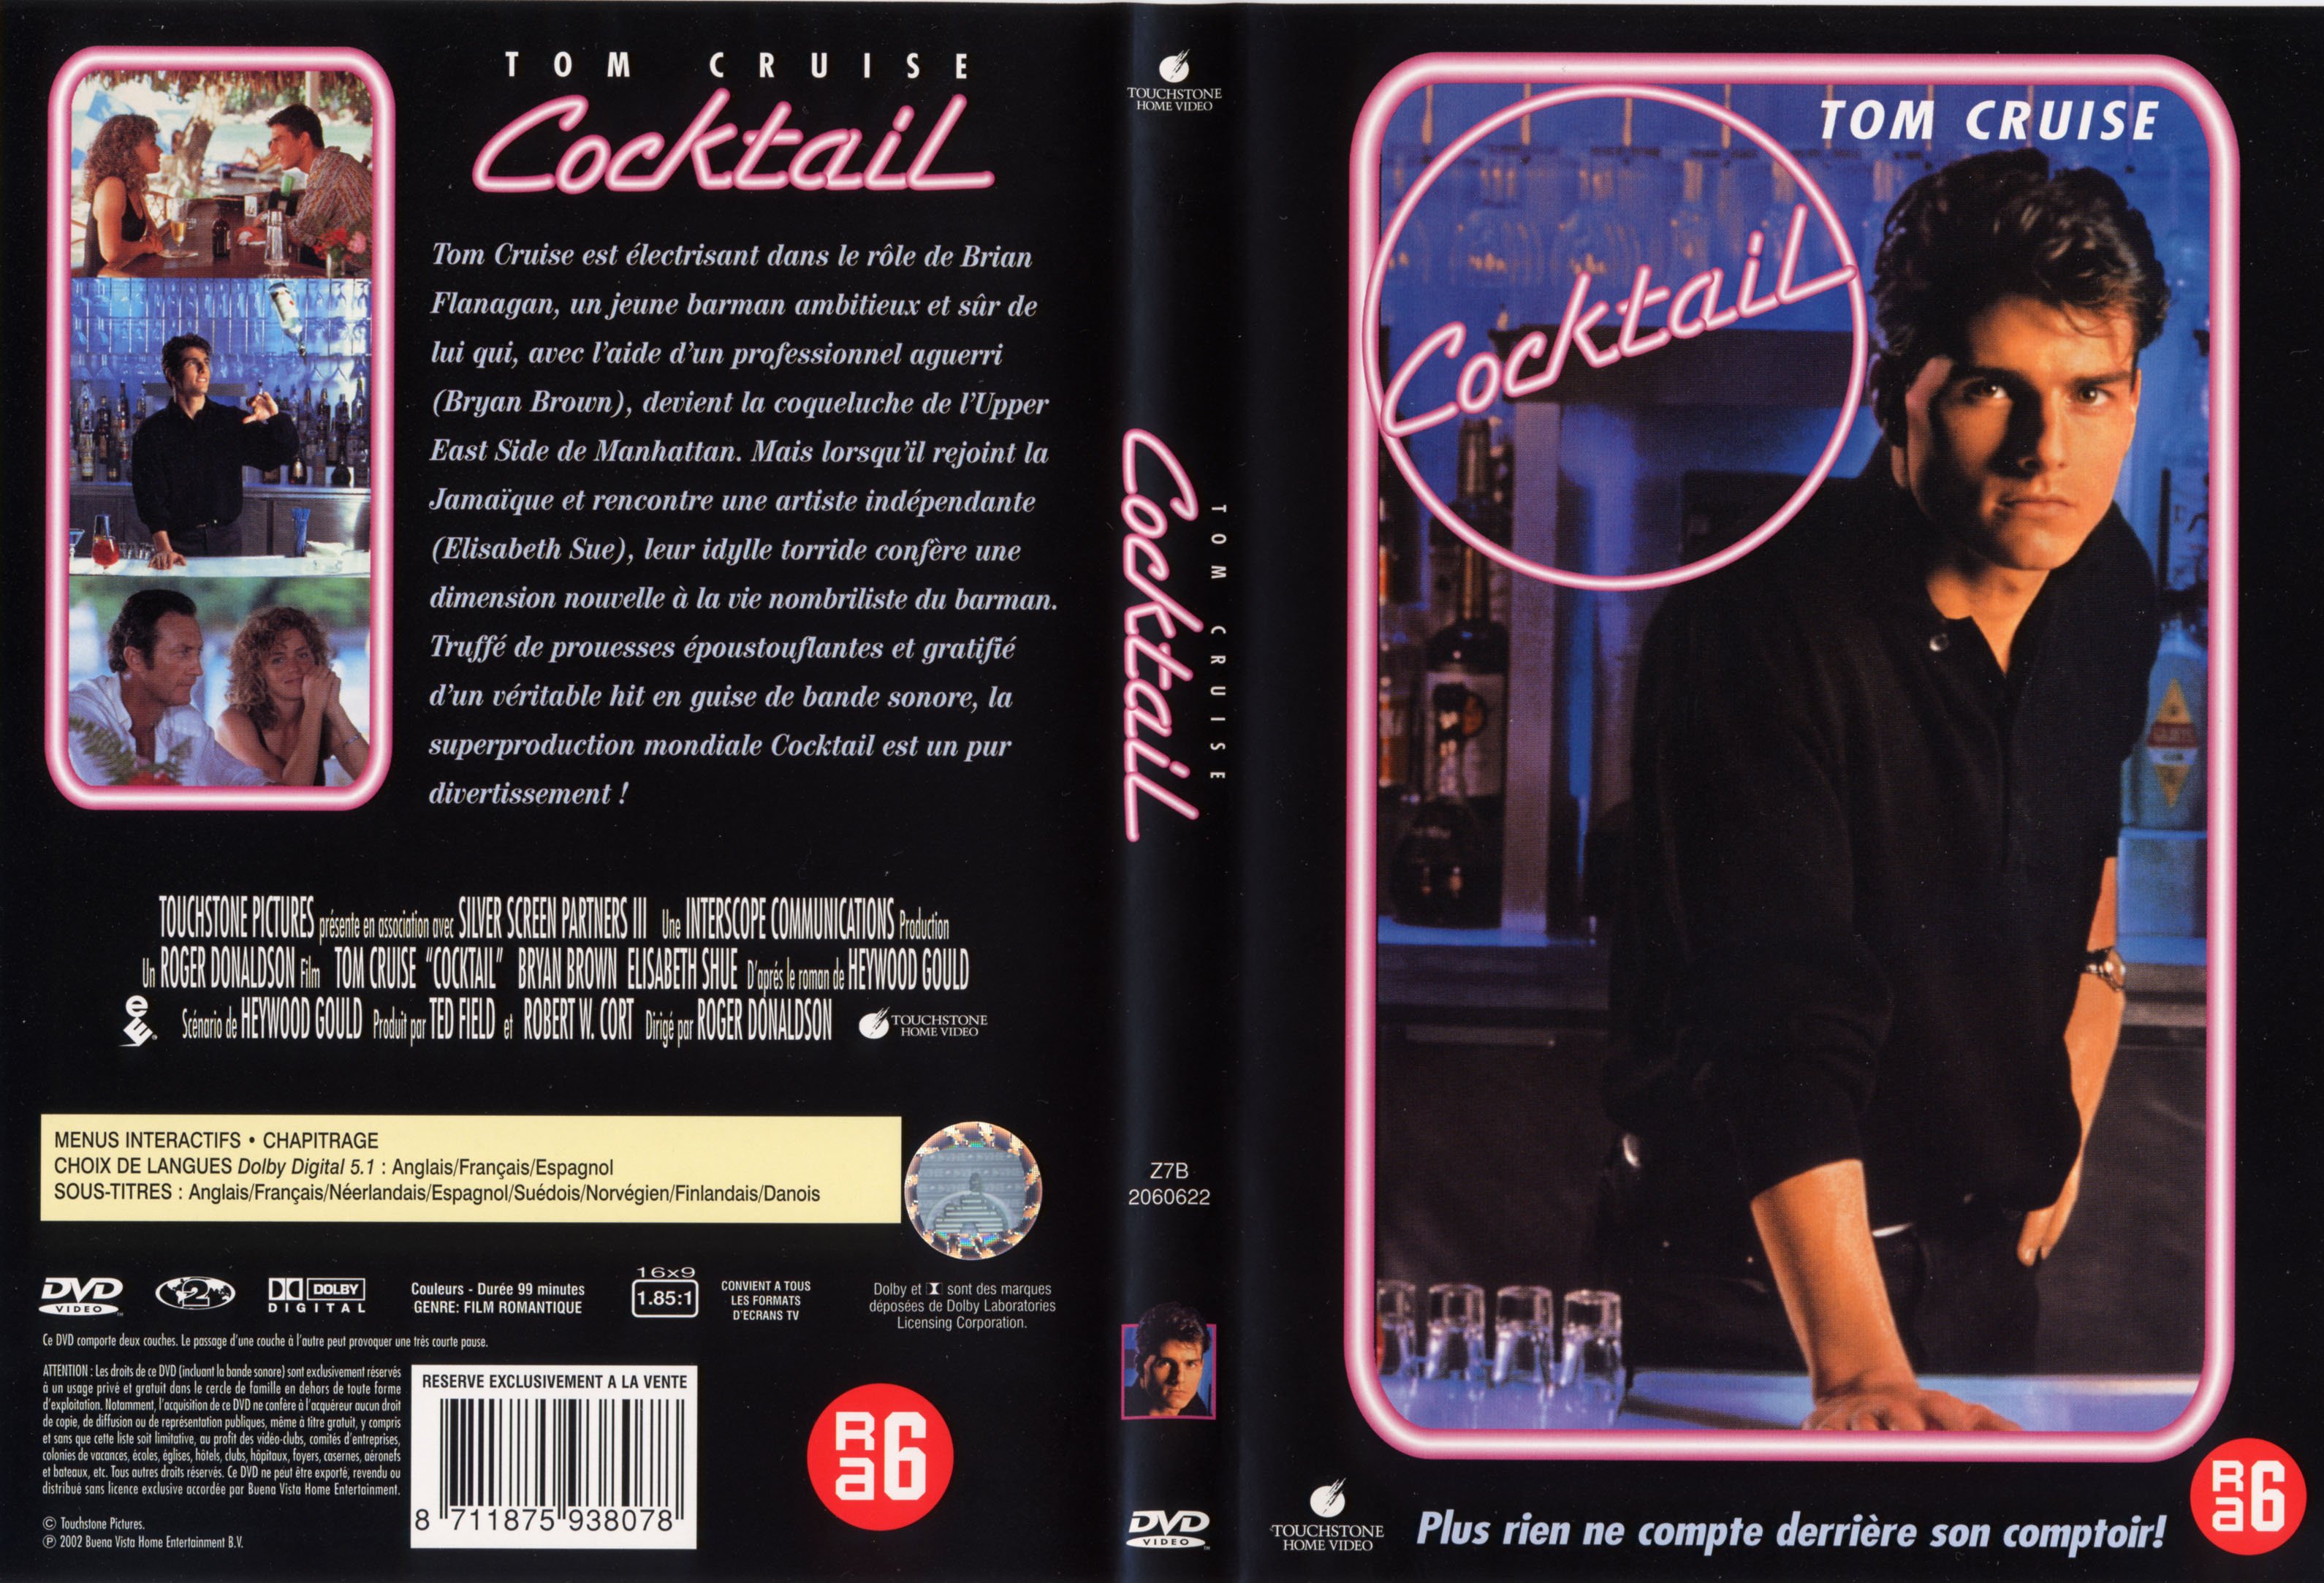 Jaquette DVD Cocktail v2